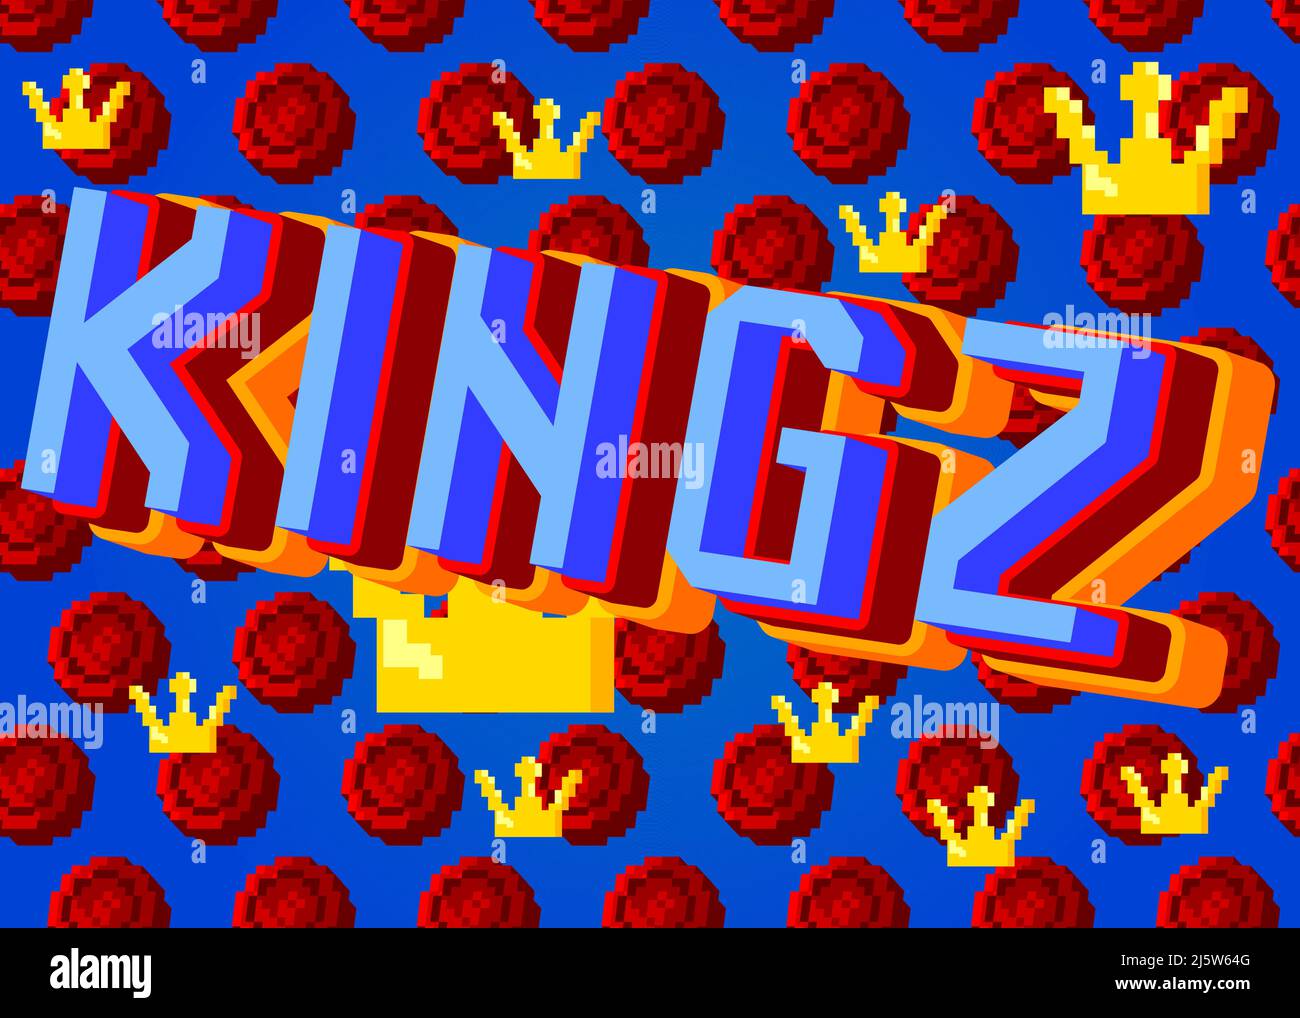 Kingz, modernes Slang (Könige) verpixeltes Wort mit geometrischem grafischen Hintergrund. Vektorgrafik Cartoon-Illustration. Stock Vektor